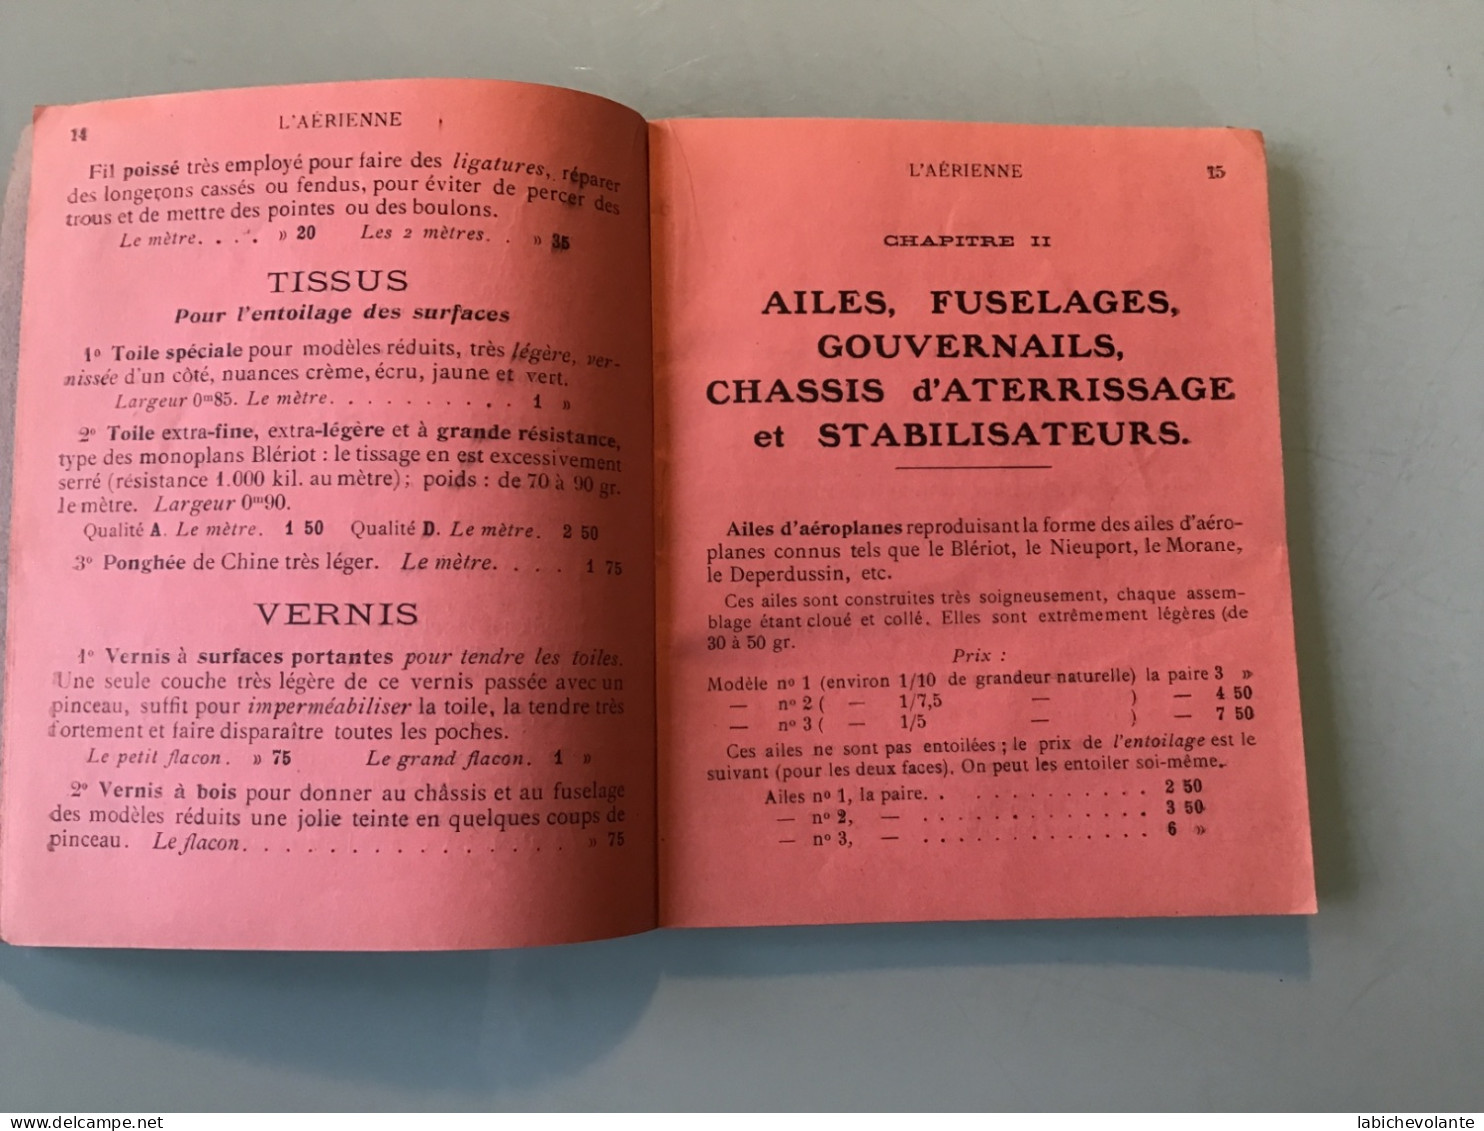 Catalogue de Fournitures et Pièces détachées 1912. 32 pages.